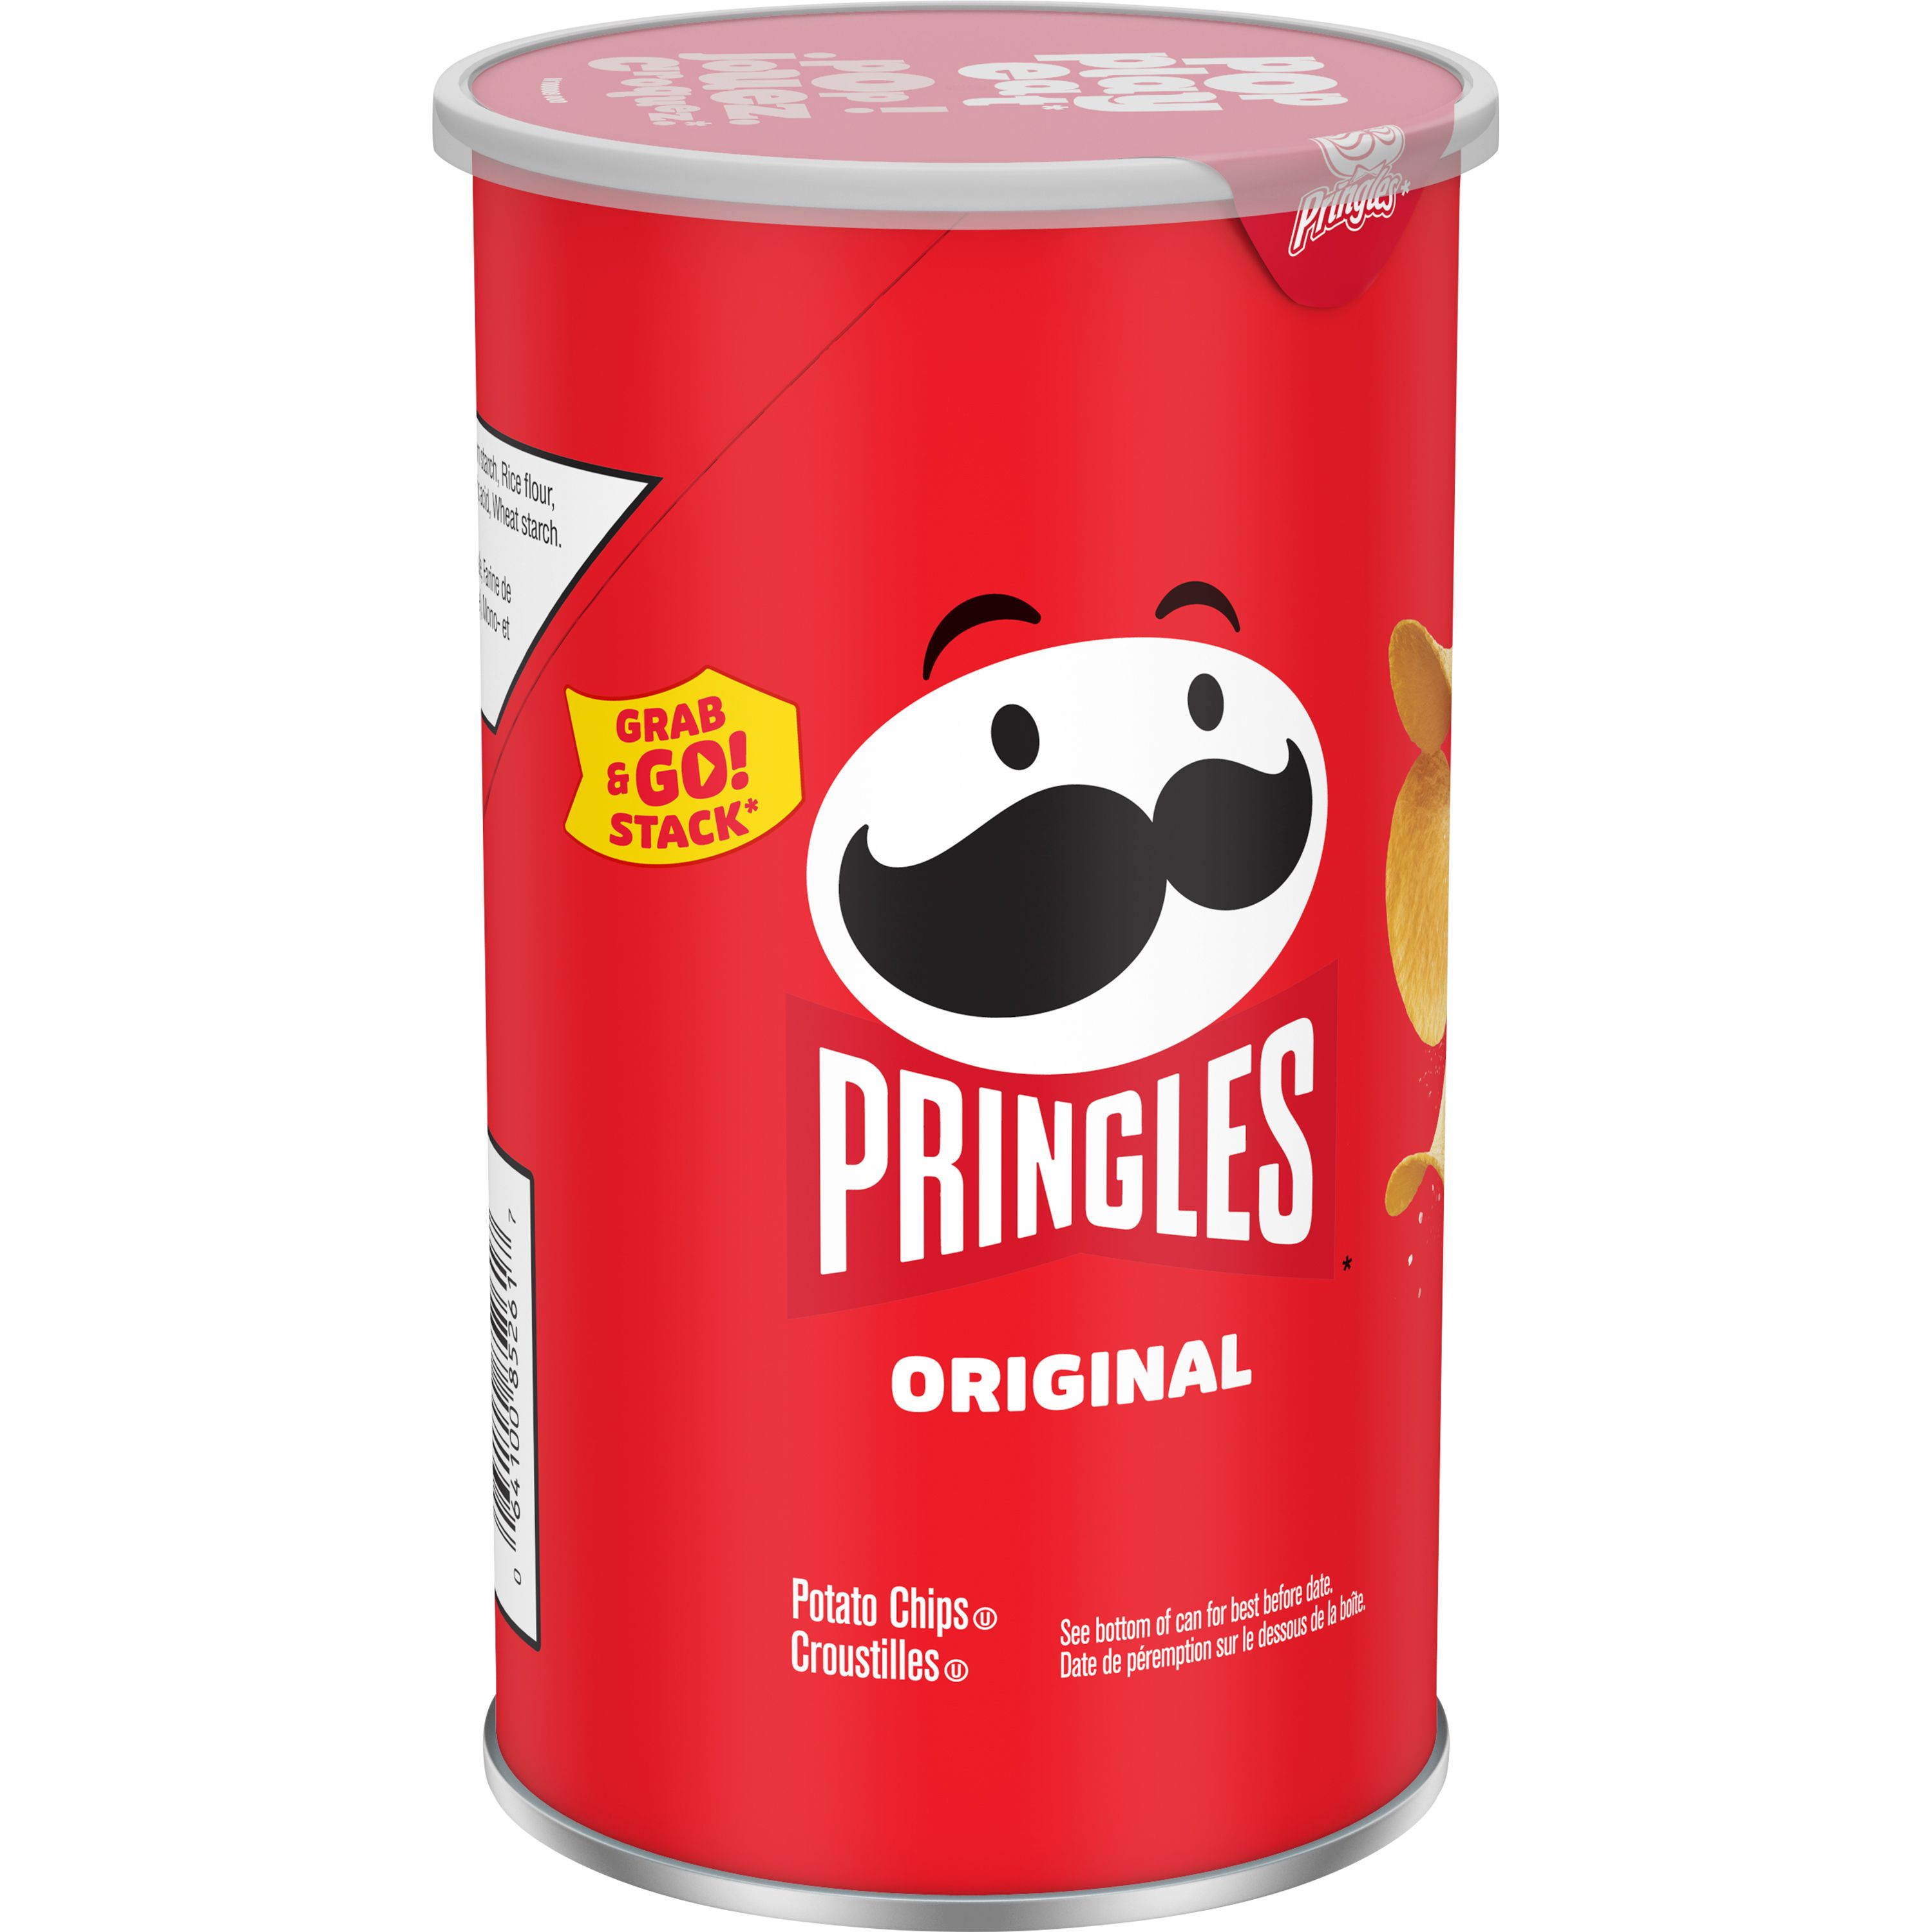 Pringles* Grab & Go Stack* Original Potato Chips - SmartLabel™